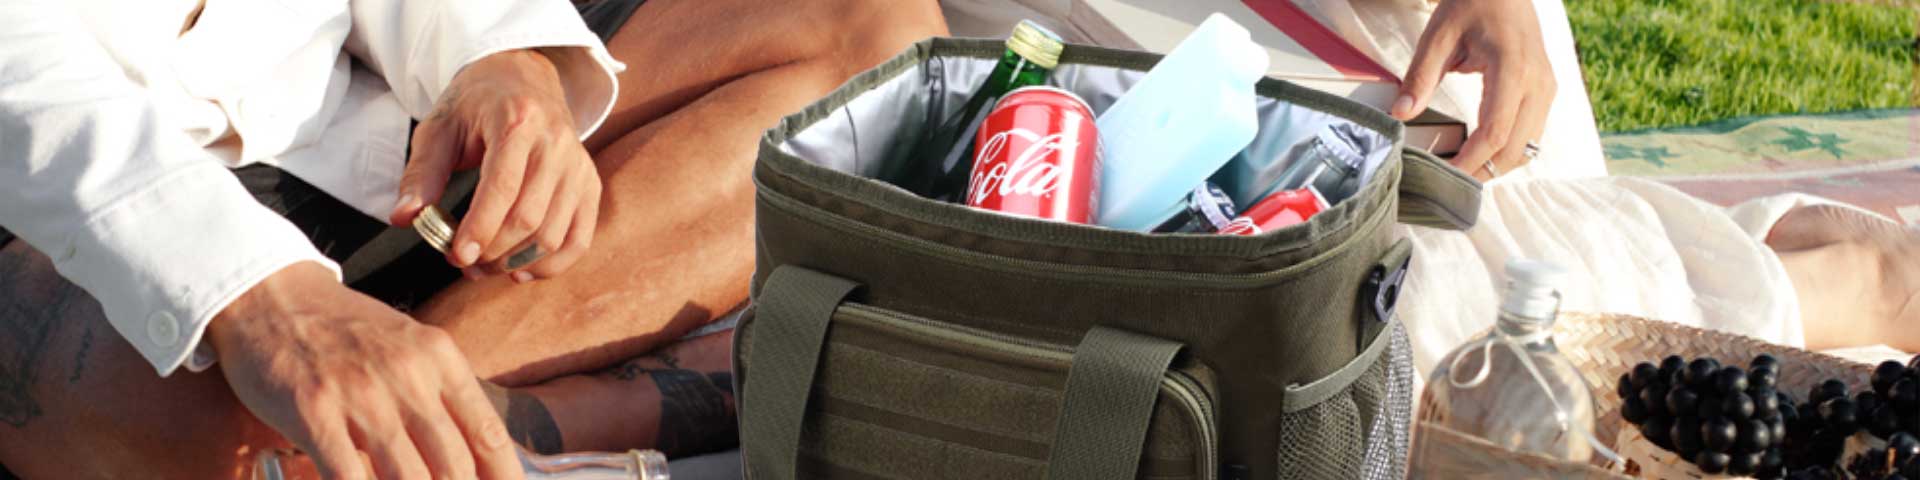 cooler lunch bag